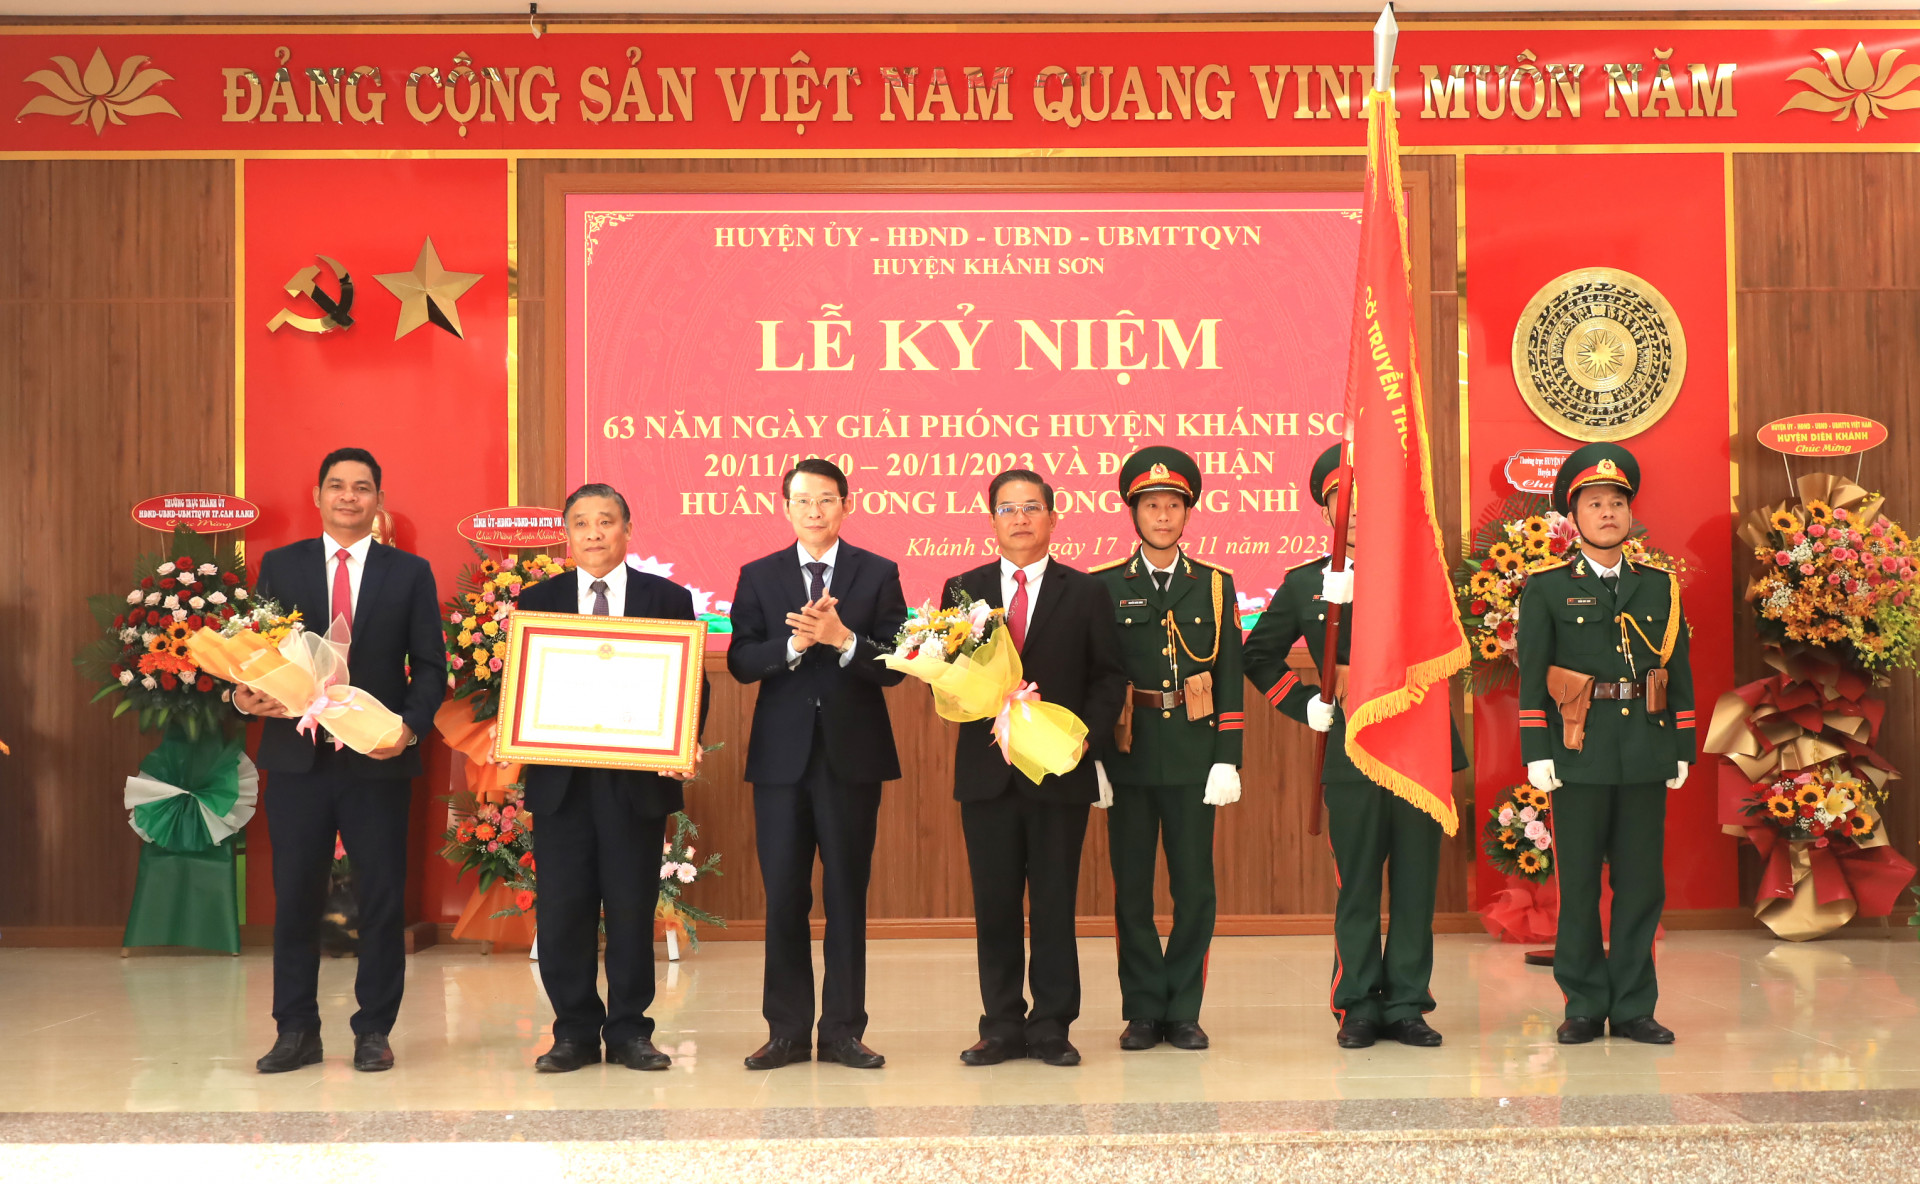 Lãnh đạo huyện Khánh Sơn đón nhận Huân chương Lao động hạng Nhì do Chủ tịch nước trao tặng nhân kỷ niệm 63 năm Ngày giải phóng huyện